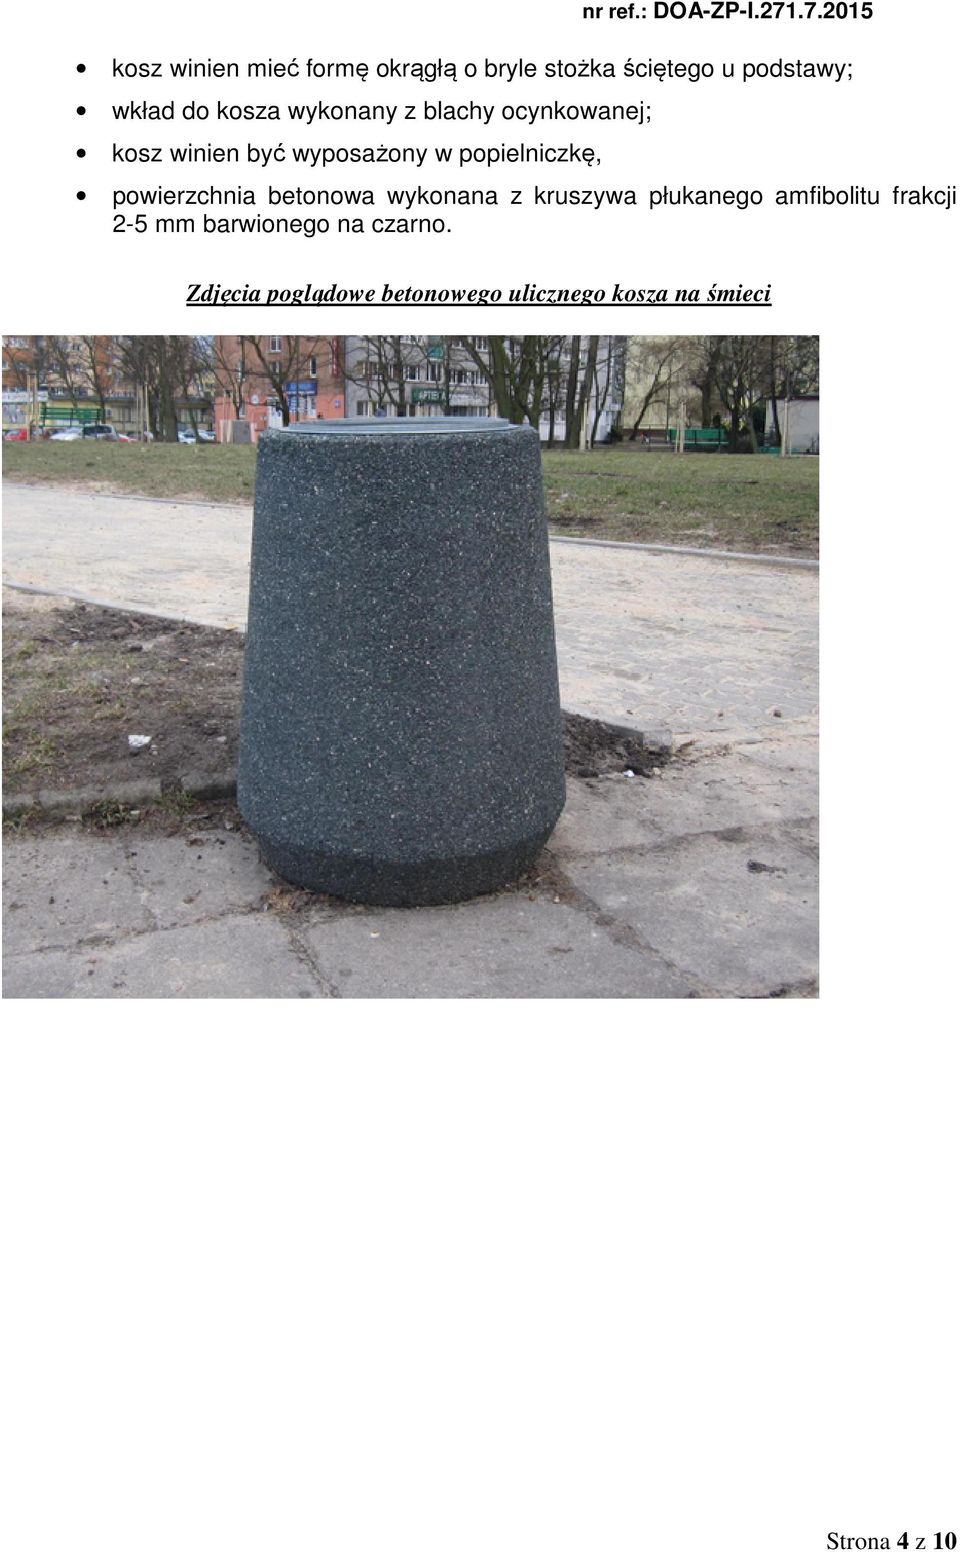 powierzchnia betonowa wykonana z kruszywa płukanego amfibolitu frakcji 2-5 mm